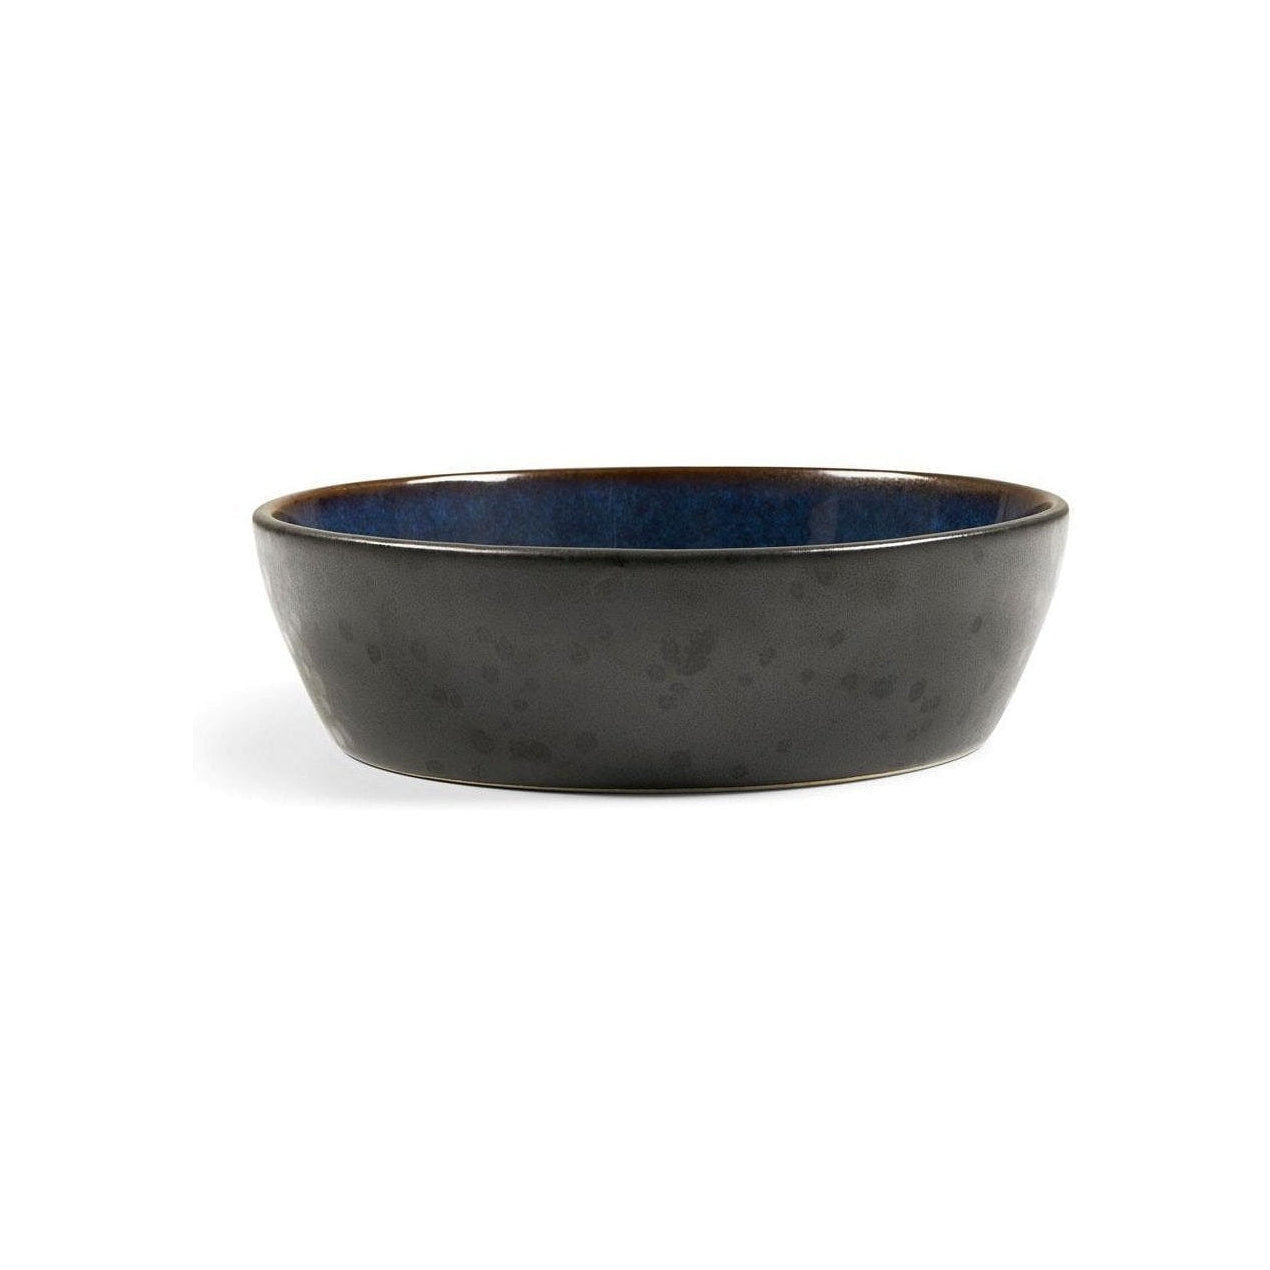 Bitz Suppe skål, sort/mørkeblå, Ø 18 cm